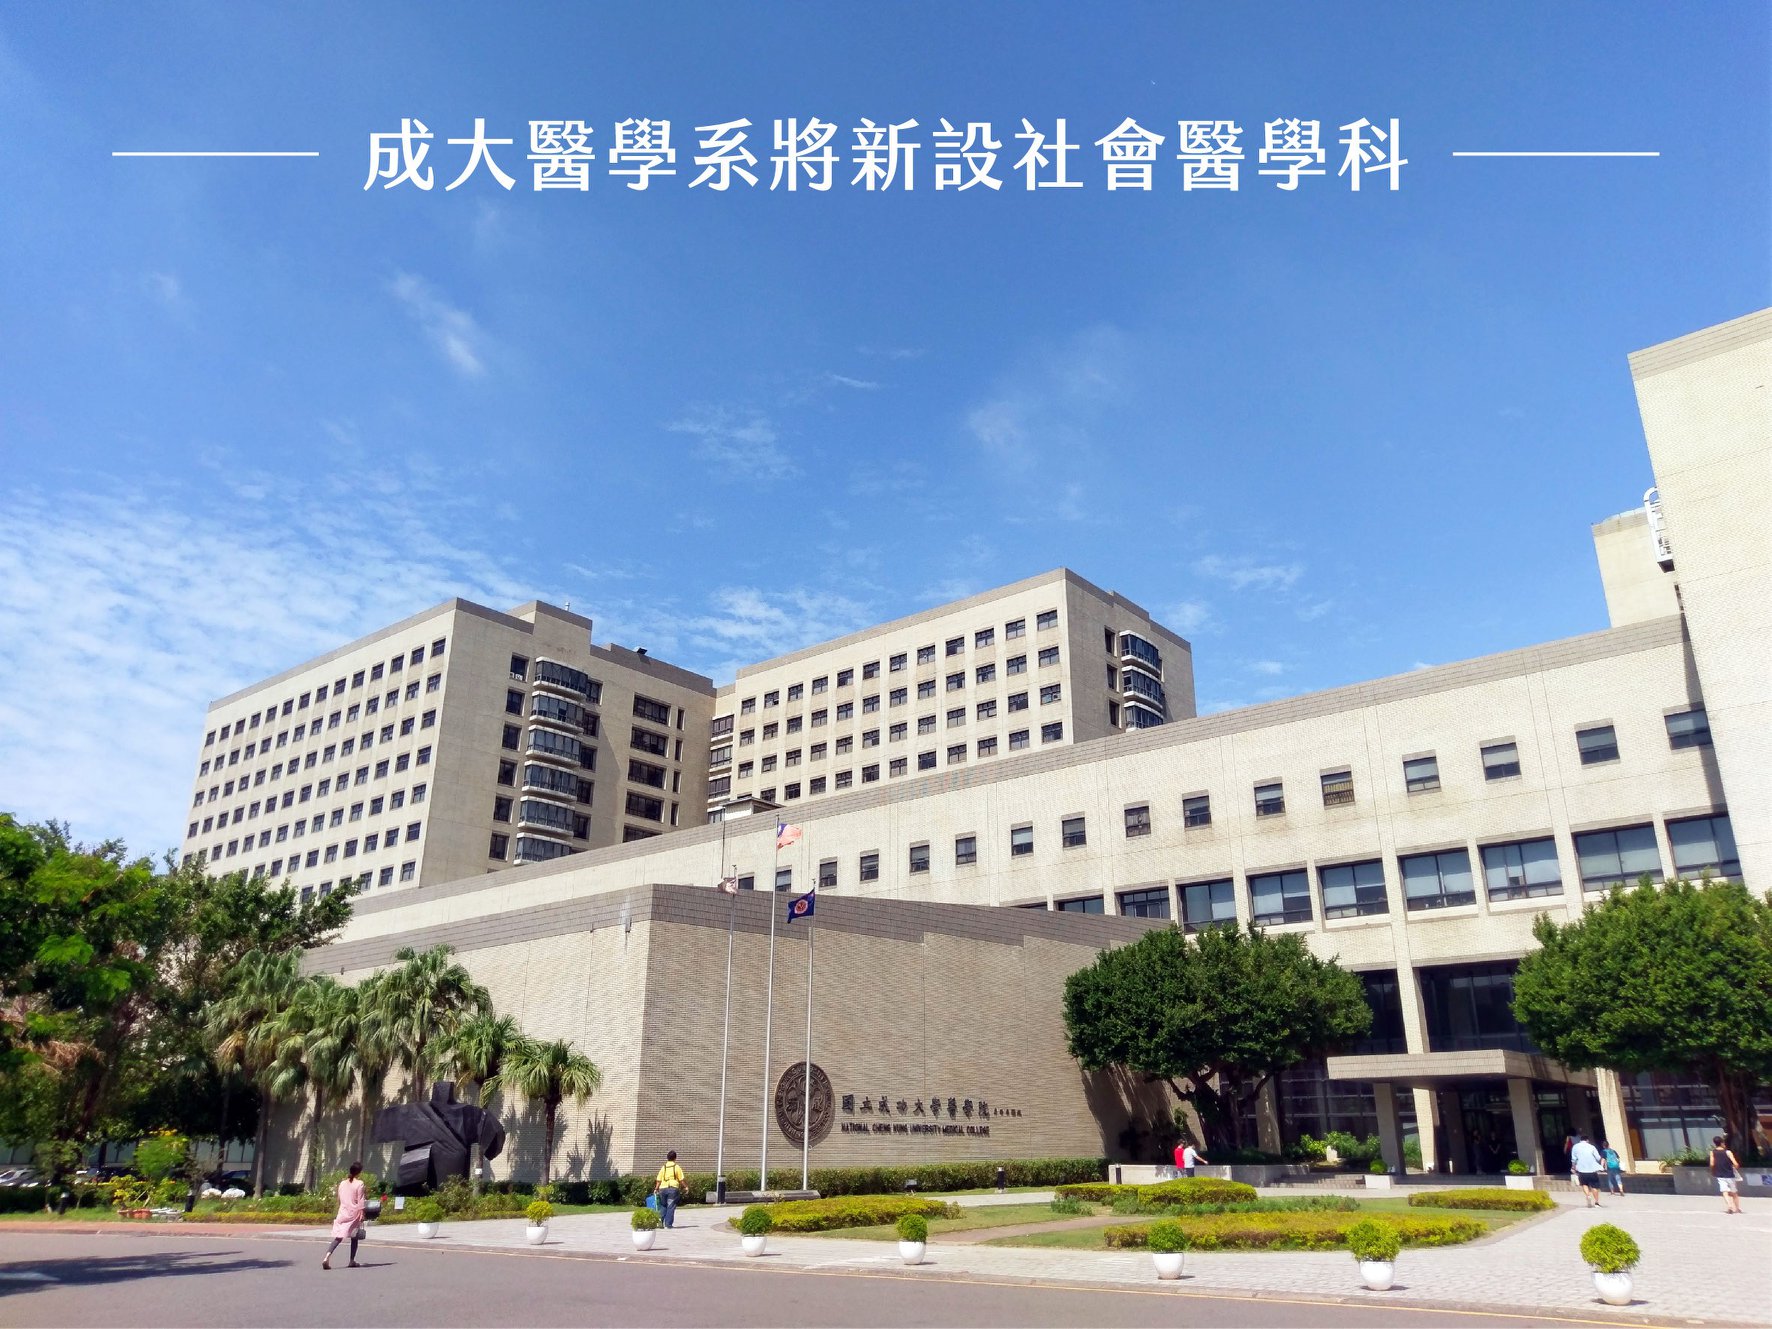 Đại học quốc gia thành công (national cheng kung university, ncku)